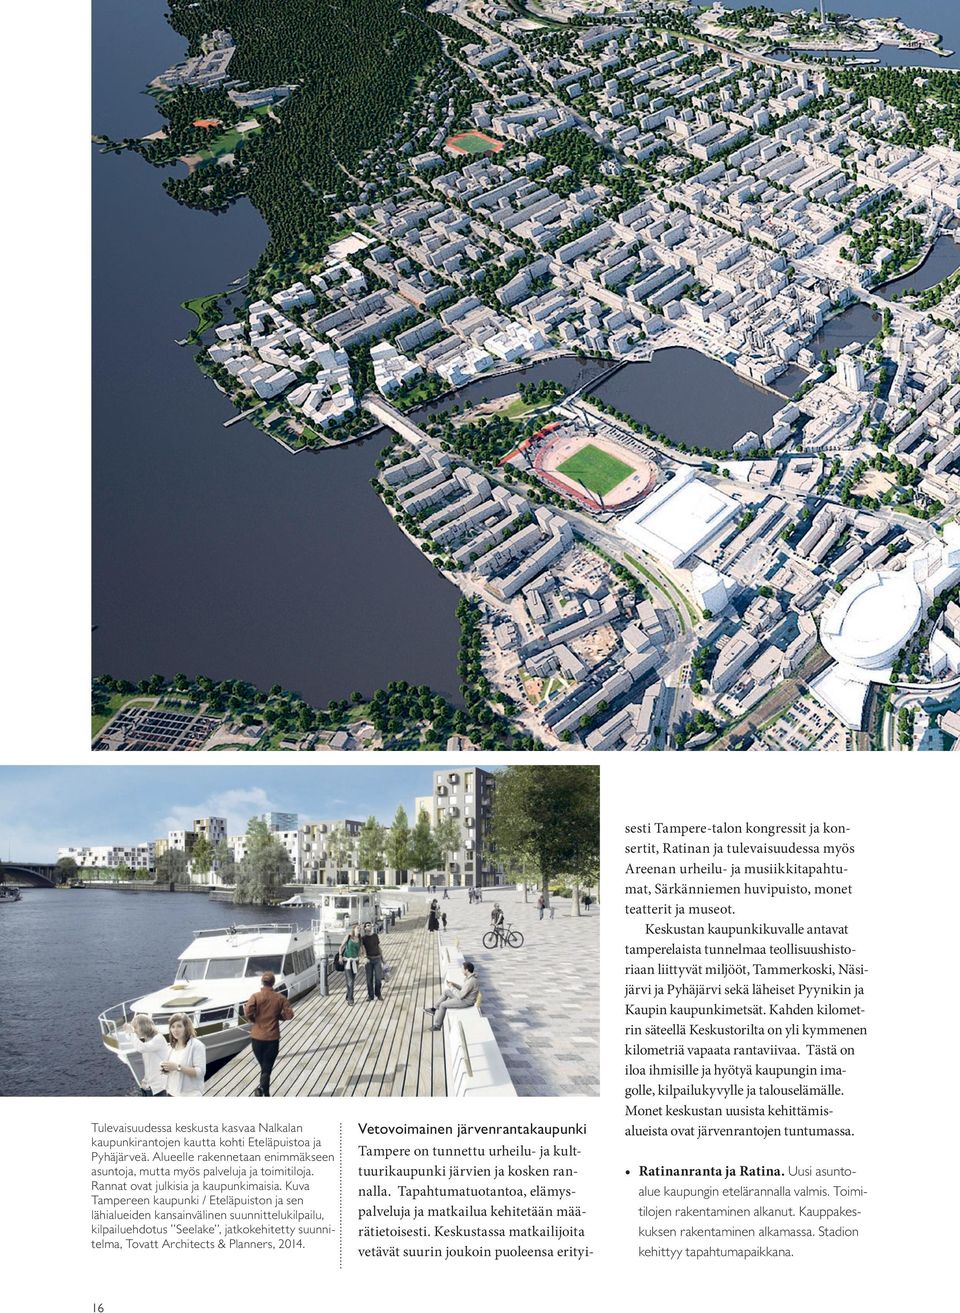 Kuva Tampereen kaupunki / Eteläpuiston ja sen lähialueiden kansainvälinen suunnittelukilpailu, kilpailuehdotus Seelake, jatkokehitetty suunnitelma, Tovatt Architects & Planners, 201.